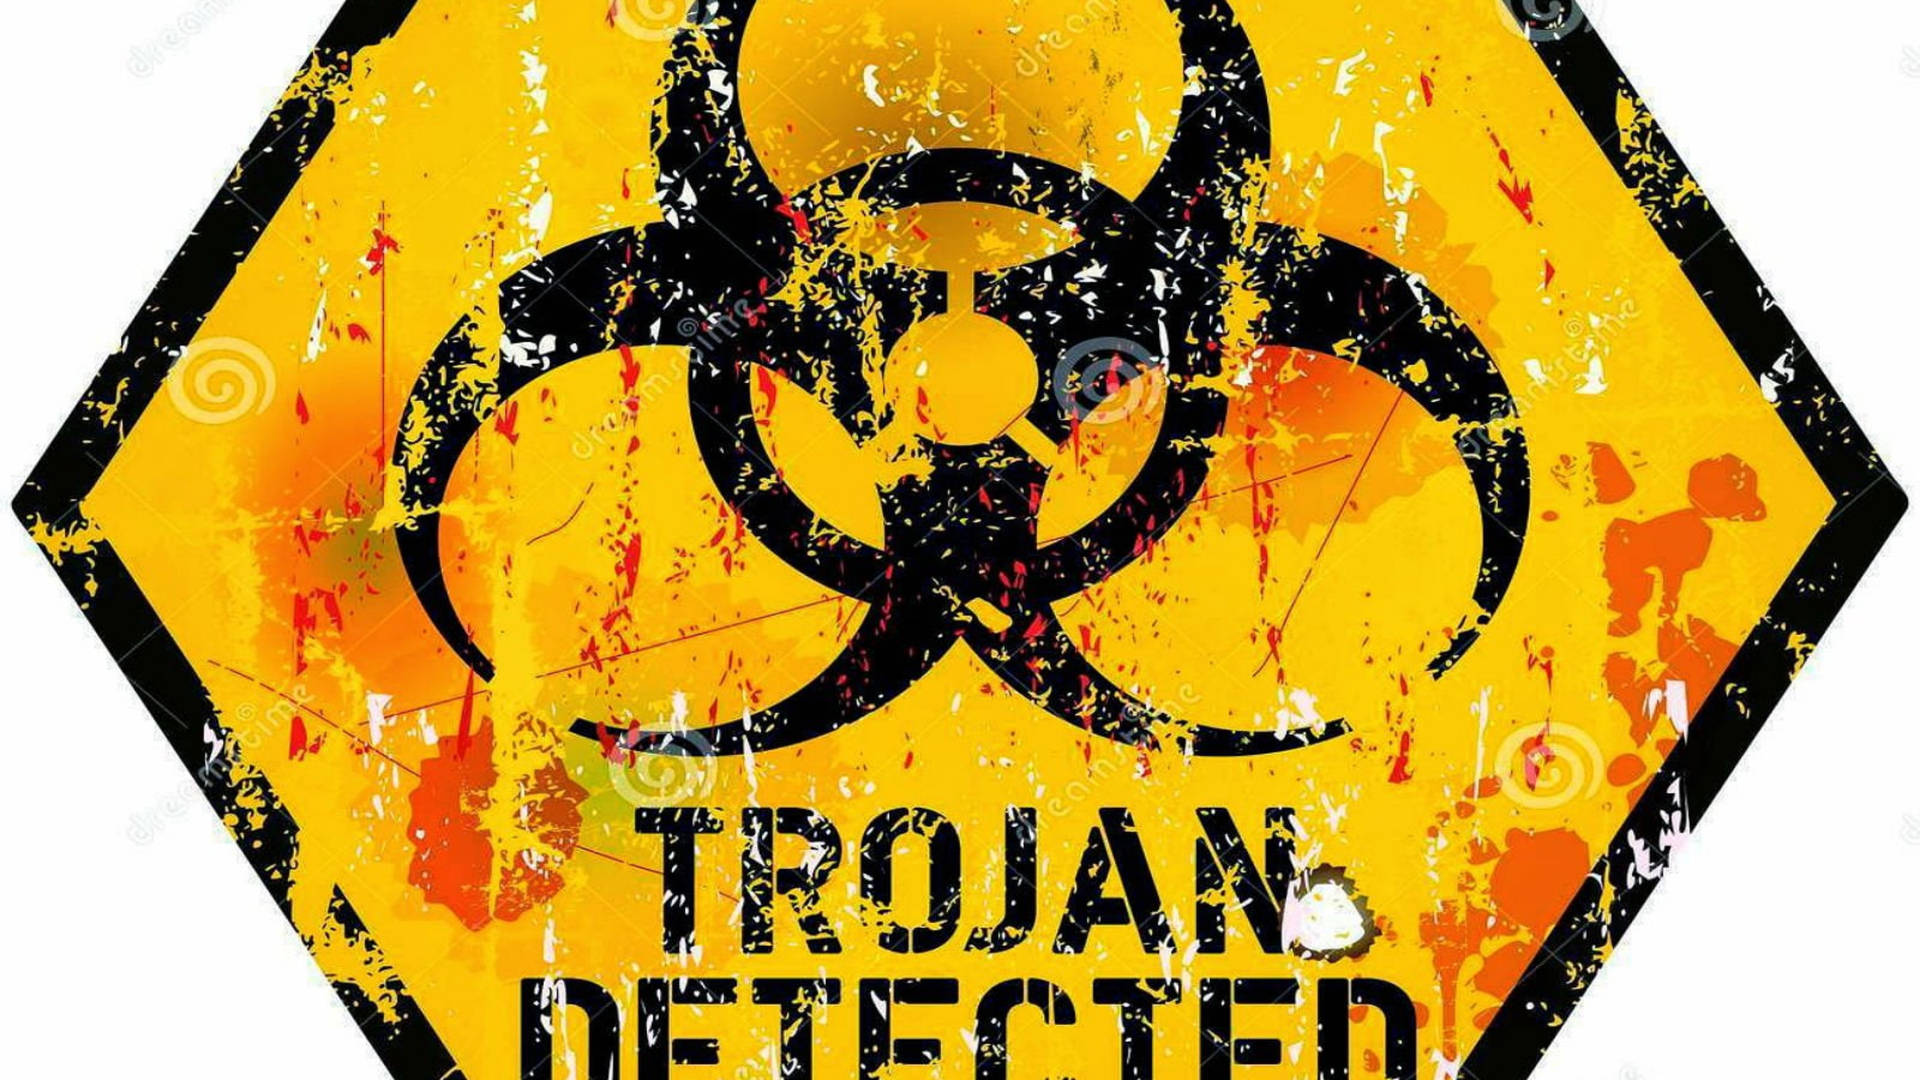 Detekteret trojansk hacker logo tapet Wallpaper